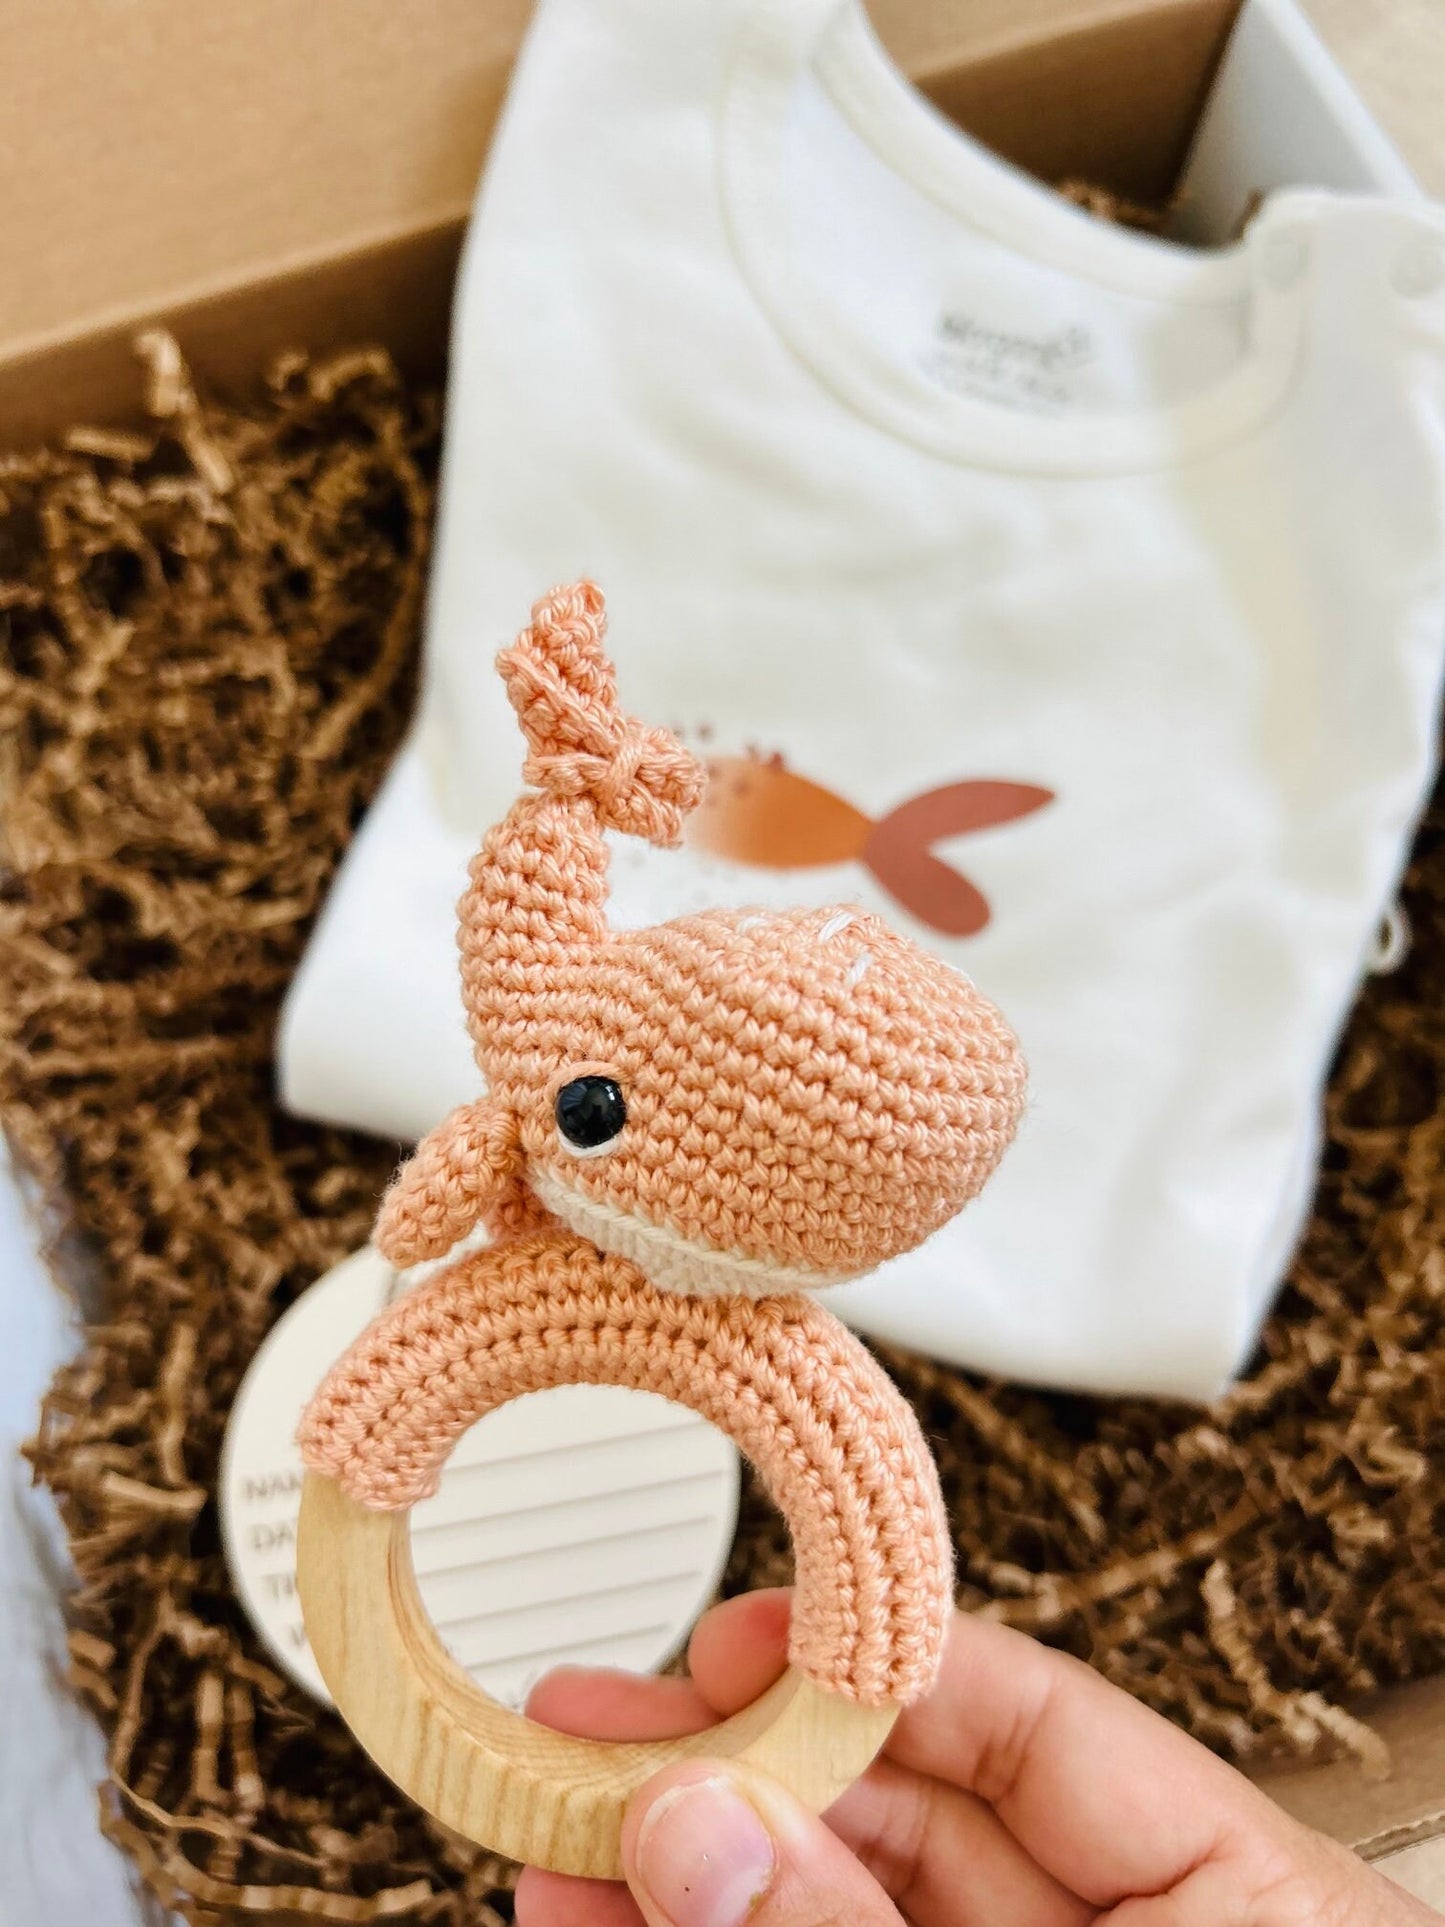 Gender Neutral Baby Shower Gift, Handmade Gift For Baby 18-24 M